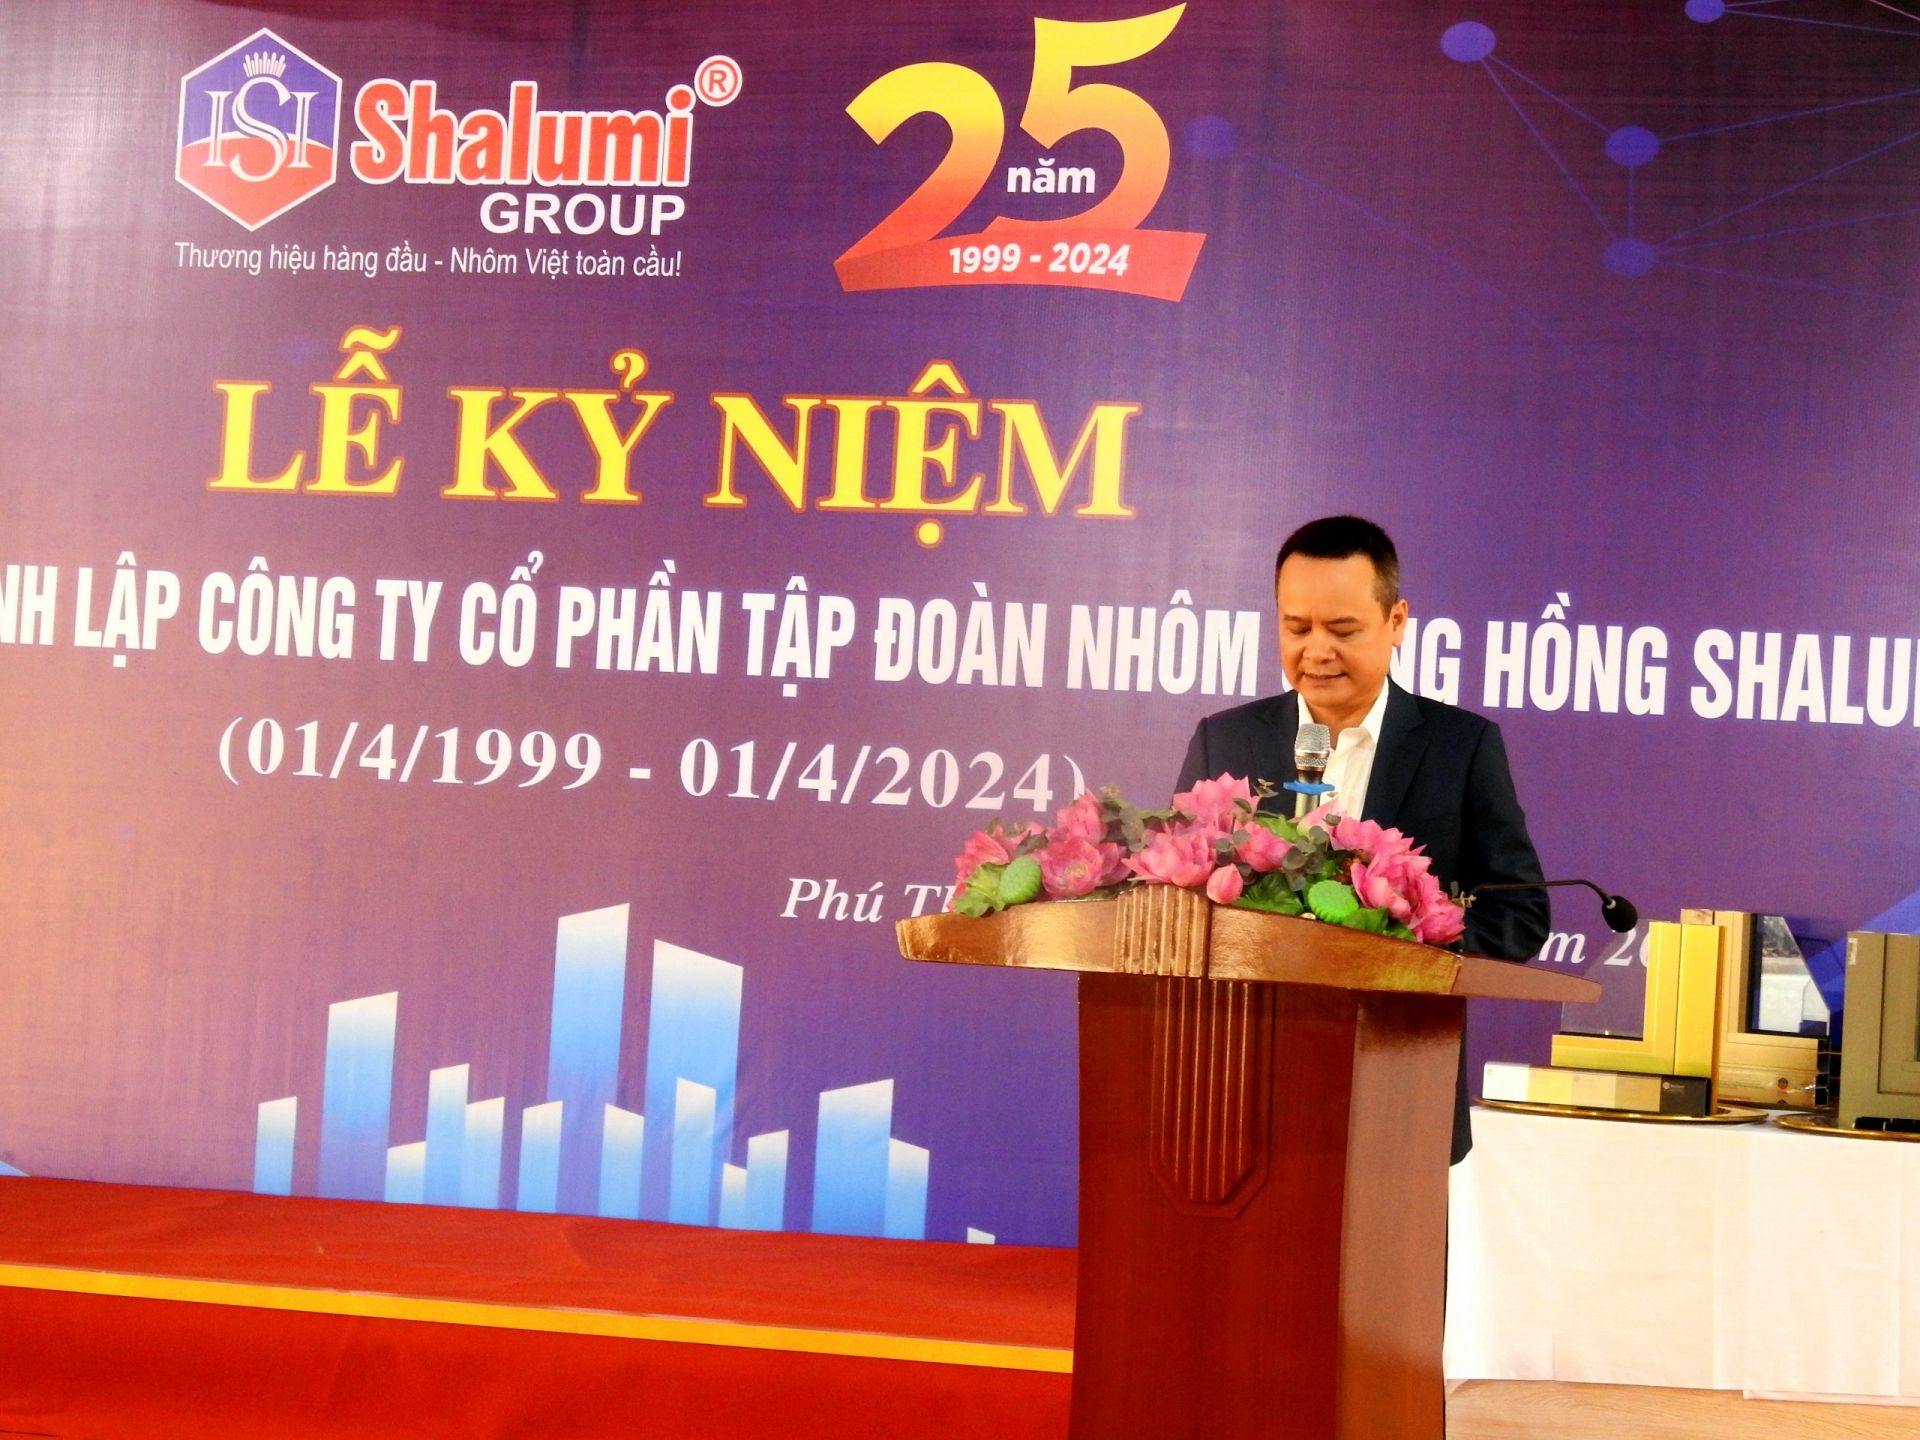 Ông Lê Văn Thắng - Tống Giám đốc Công ty CP Tập đoàn Nhôm Sông Hồng Shalumi phát biểu tại buổi lễ